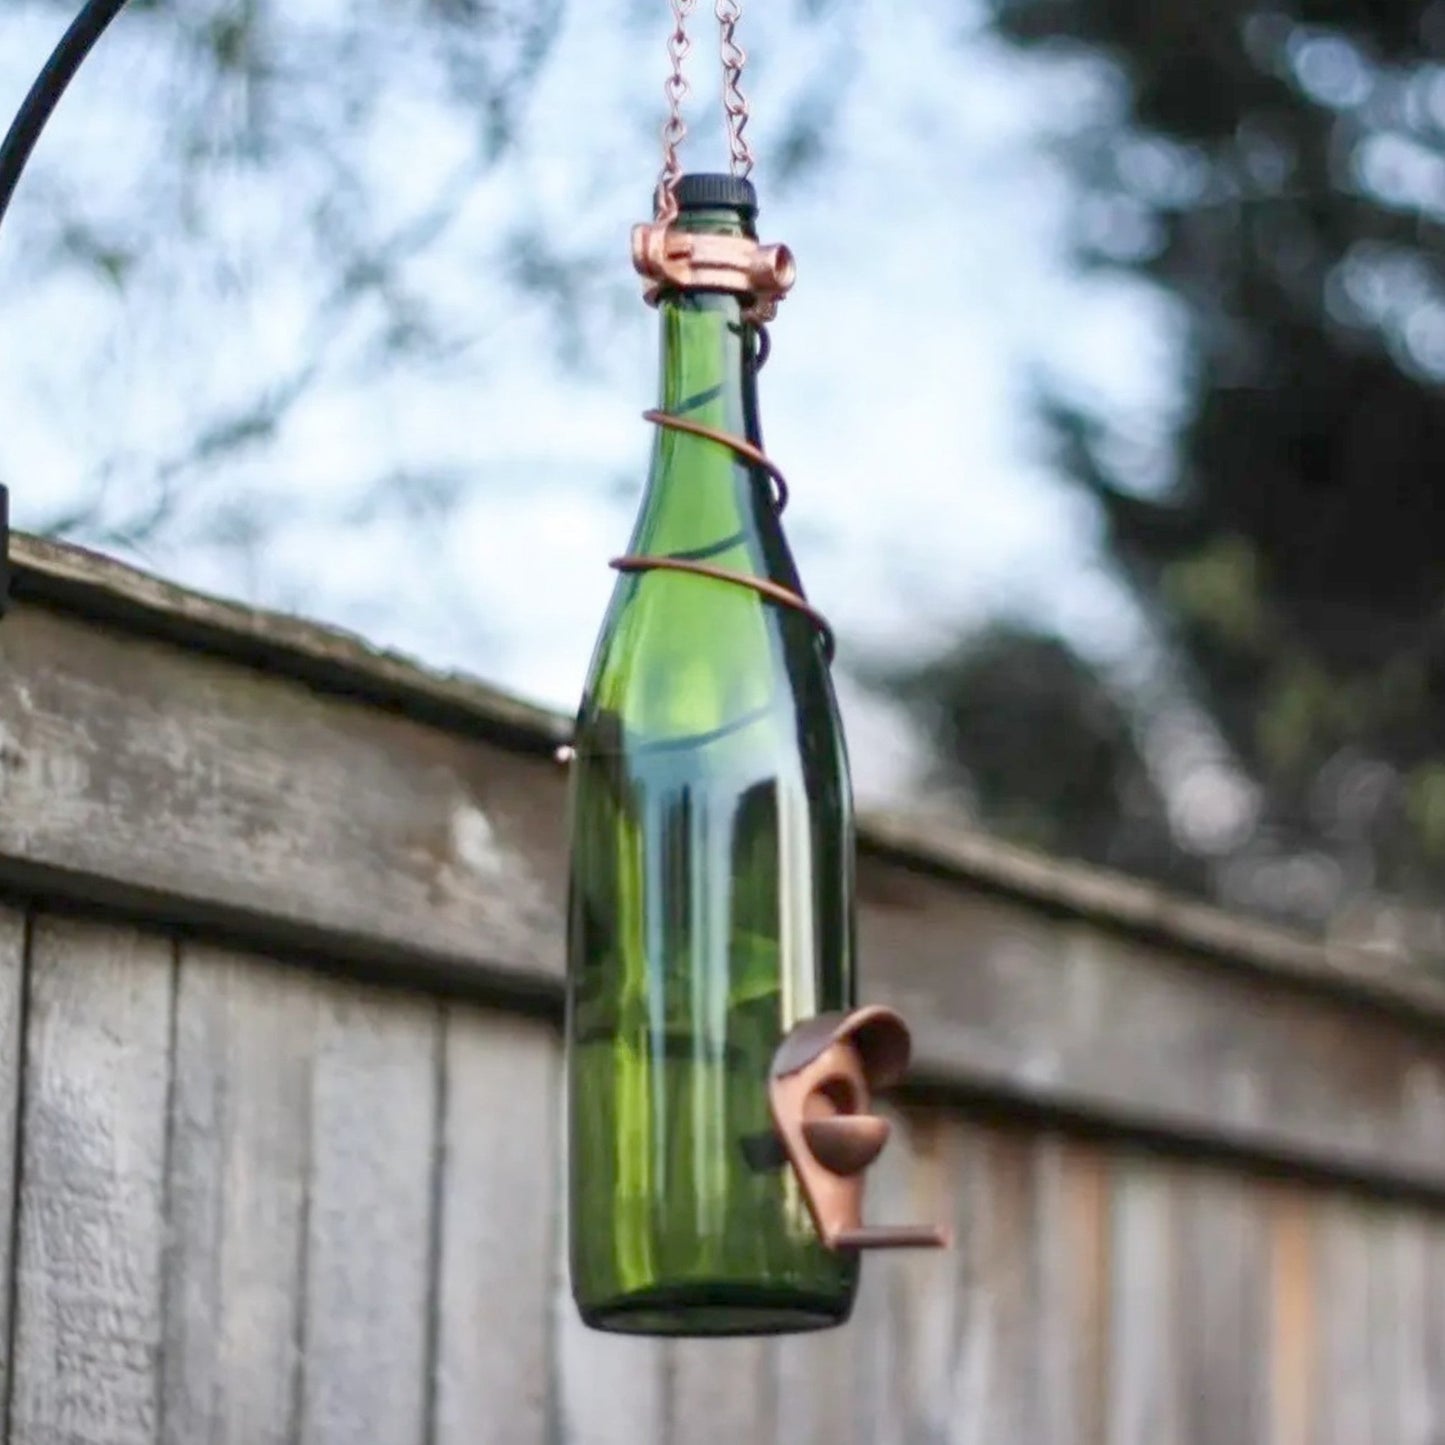 Wine Bottle Bird Feeder - Made in the USA